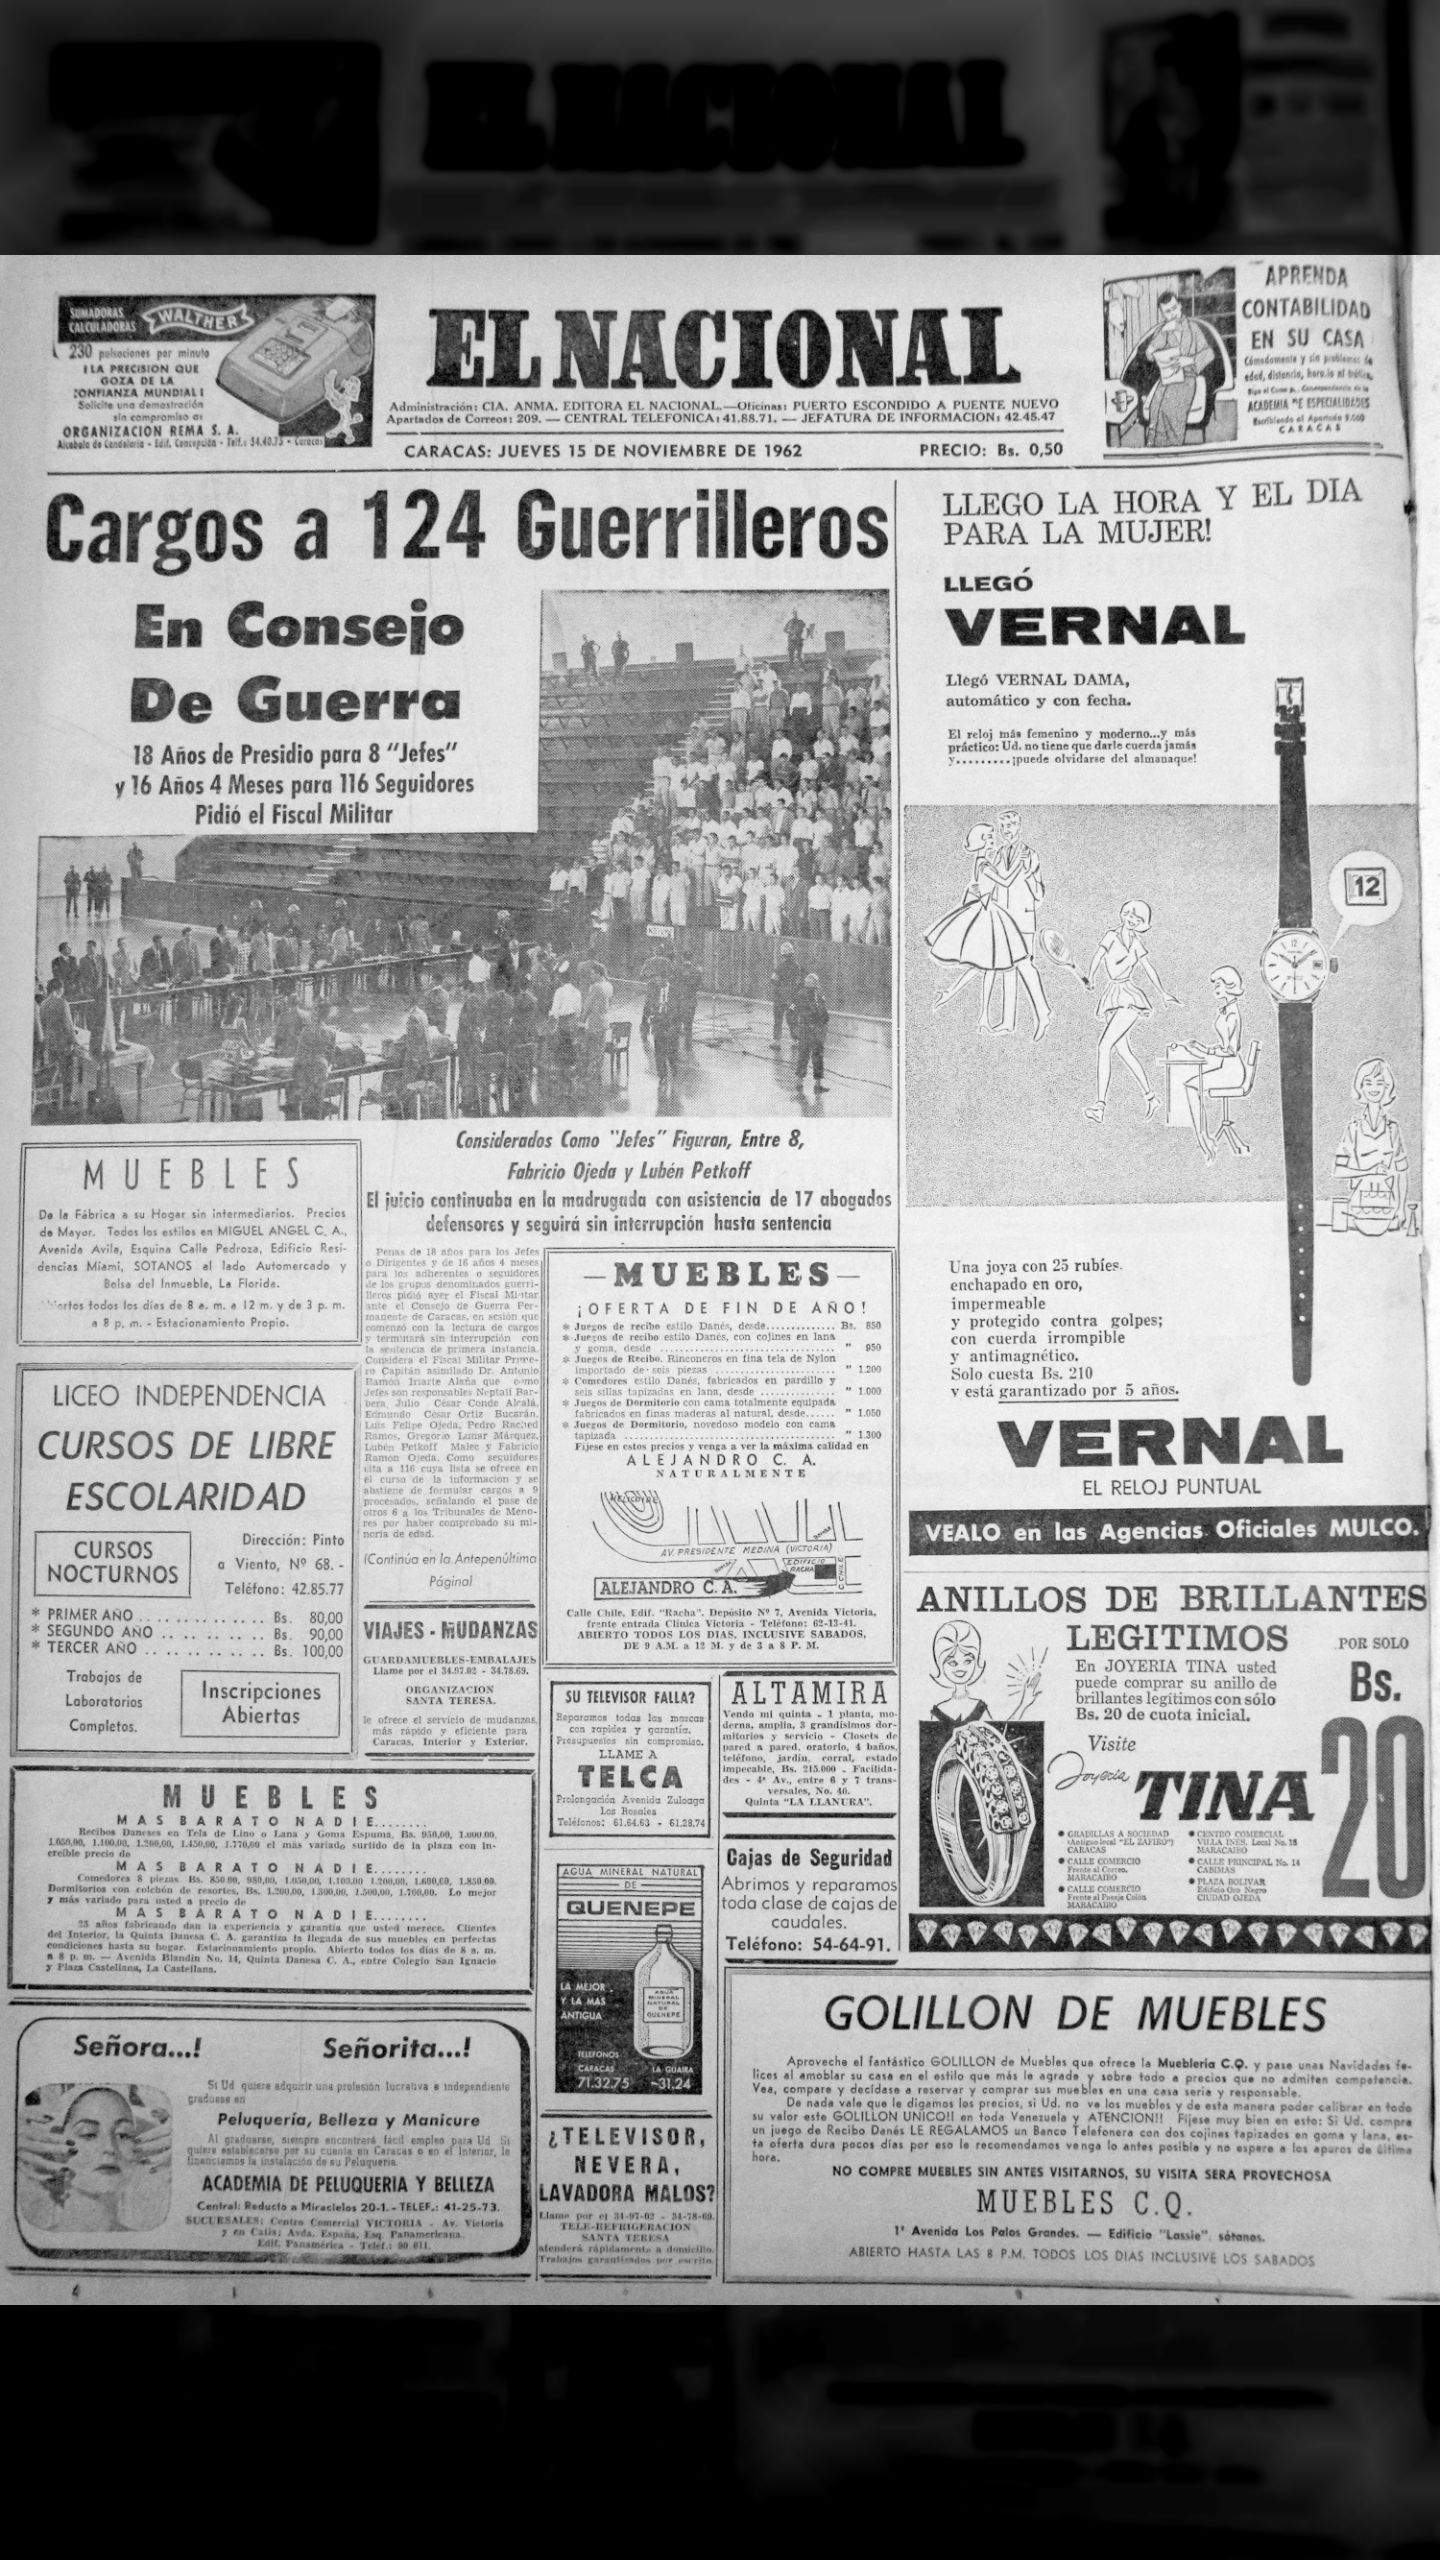 Gran Consejo de Guerra "yo no cargo preso amarrado" (El Nacional, 15 de noviembre 1962)